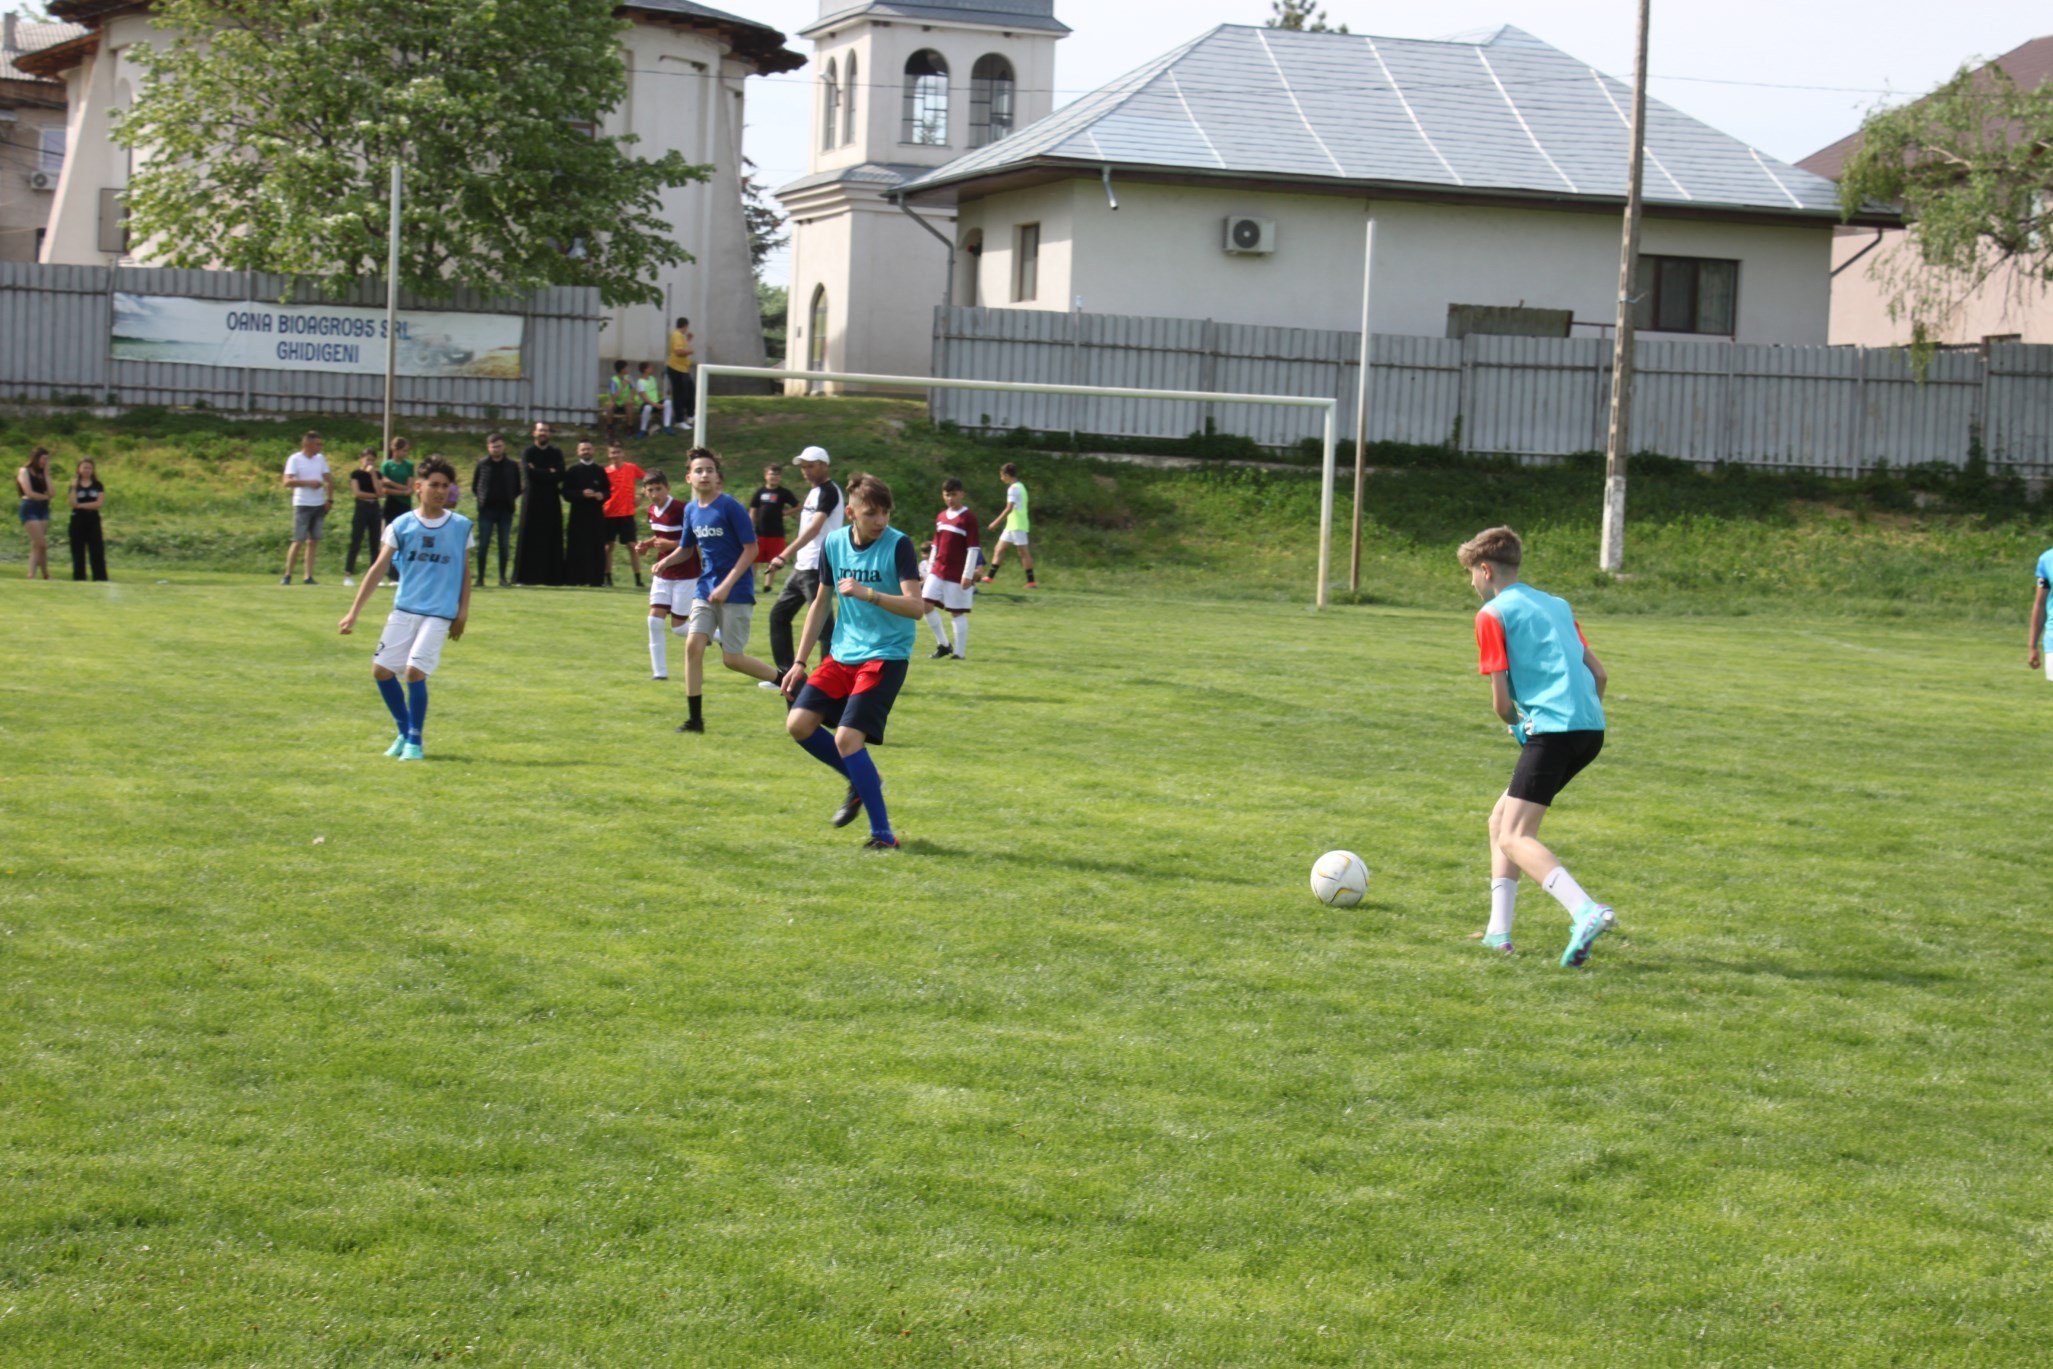 Tinereţe şi credinţă: Campionat şcolar de fotbal la Ghidigeni (FOTO)